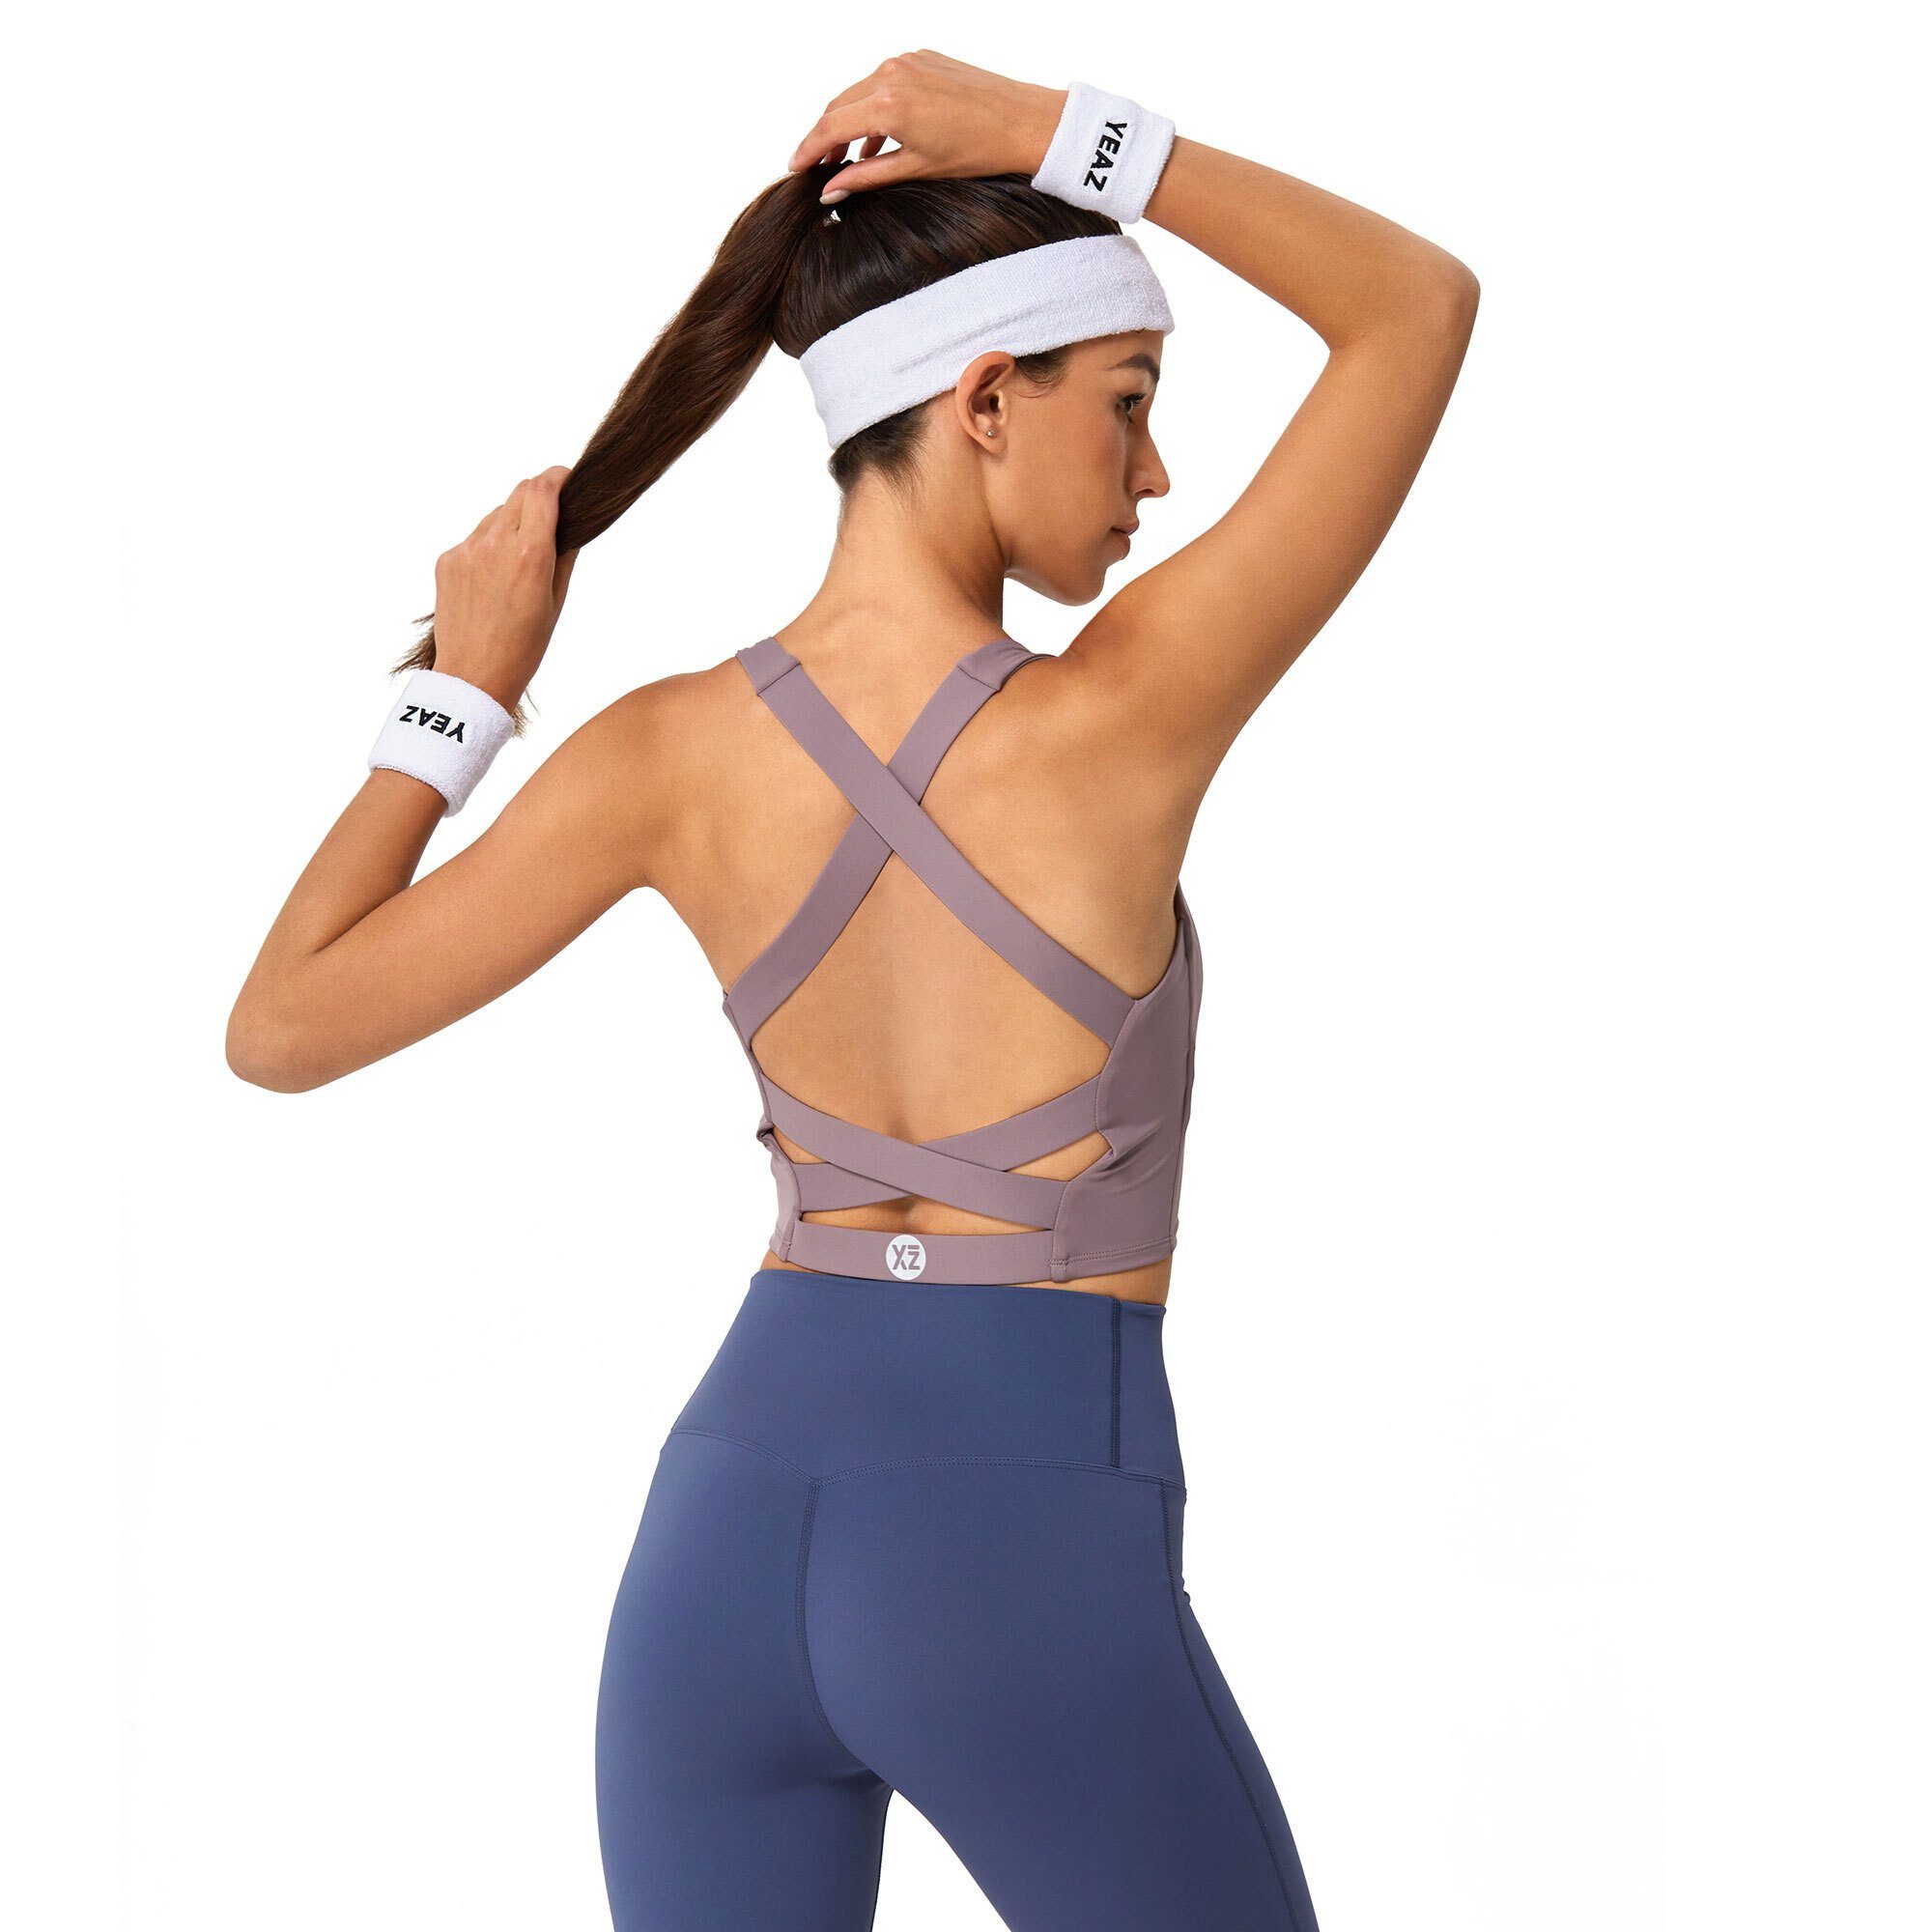 YEAZ Yogatop SHOW top pink Sportliches, mit (1-tlg) Design Passform cooles einzigartiger